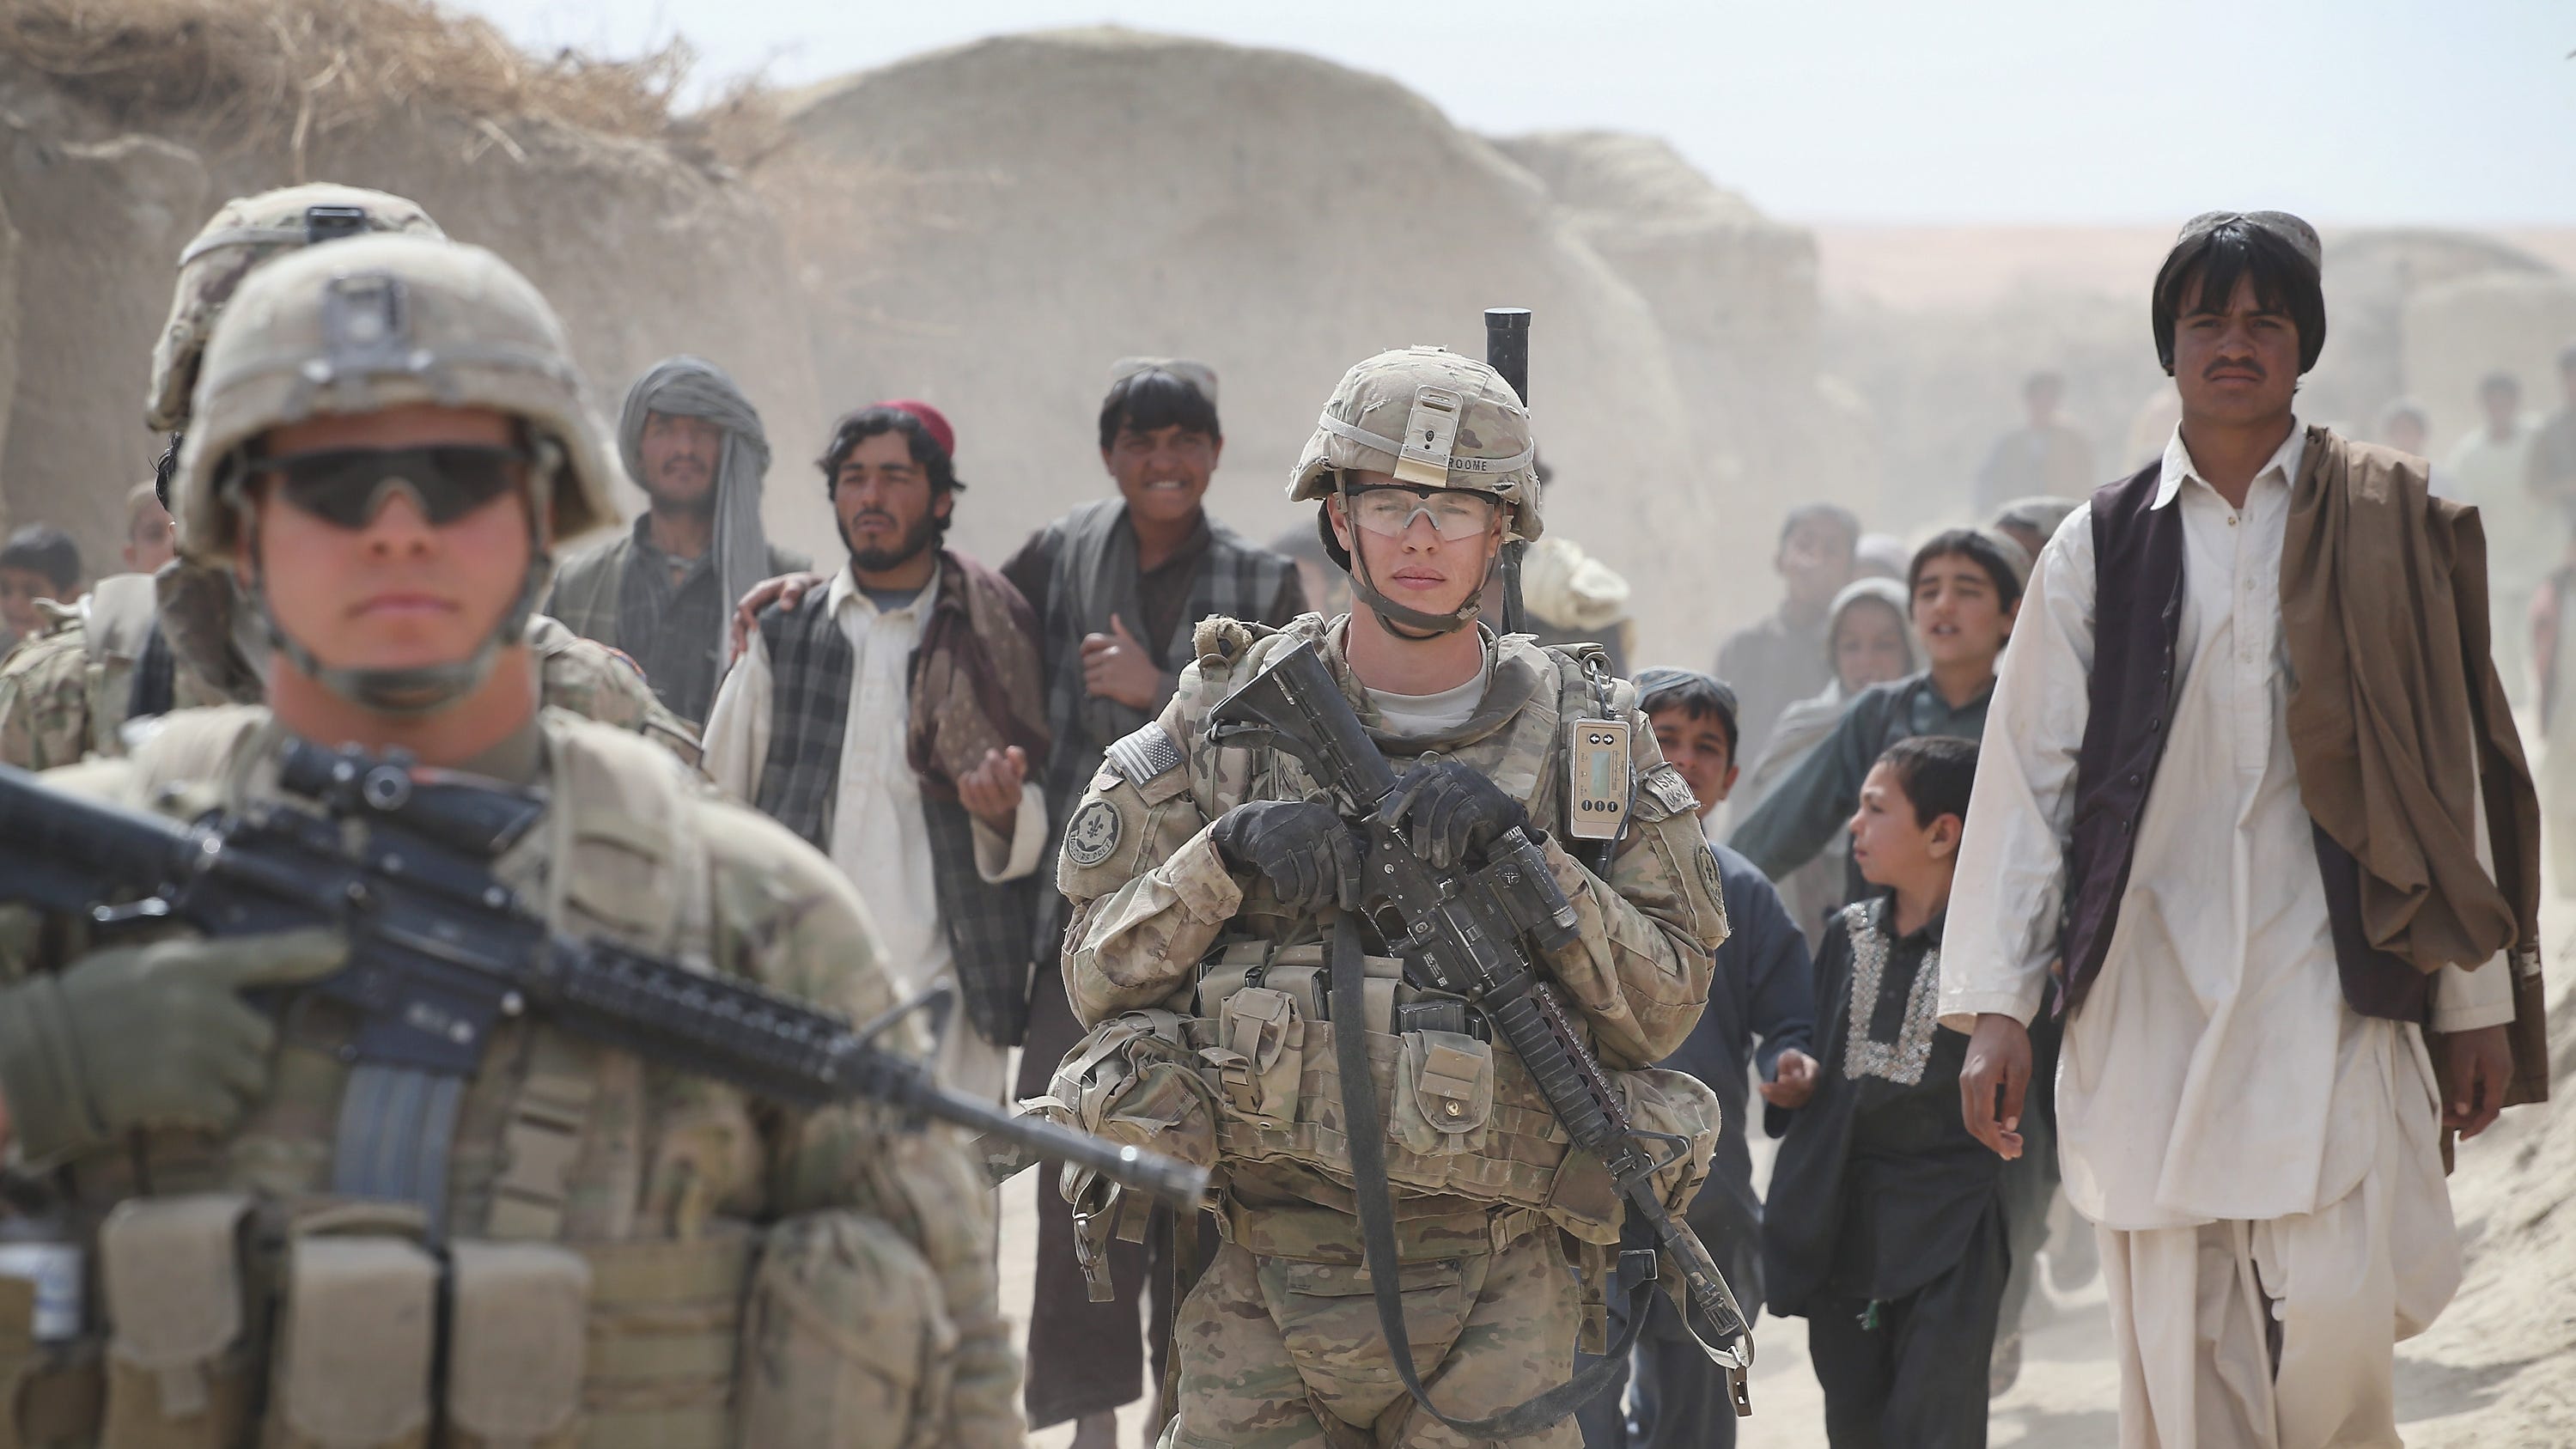 Операция в афганистане название. США В Афганистане 2001. Американские солдаты в Афганистане 1989. Американские солдаты в Афганистане 2001.